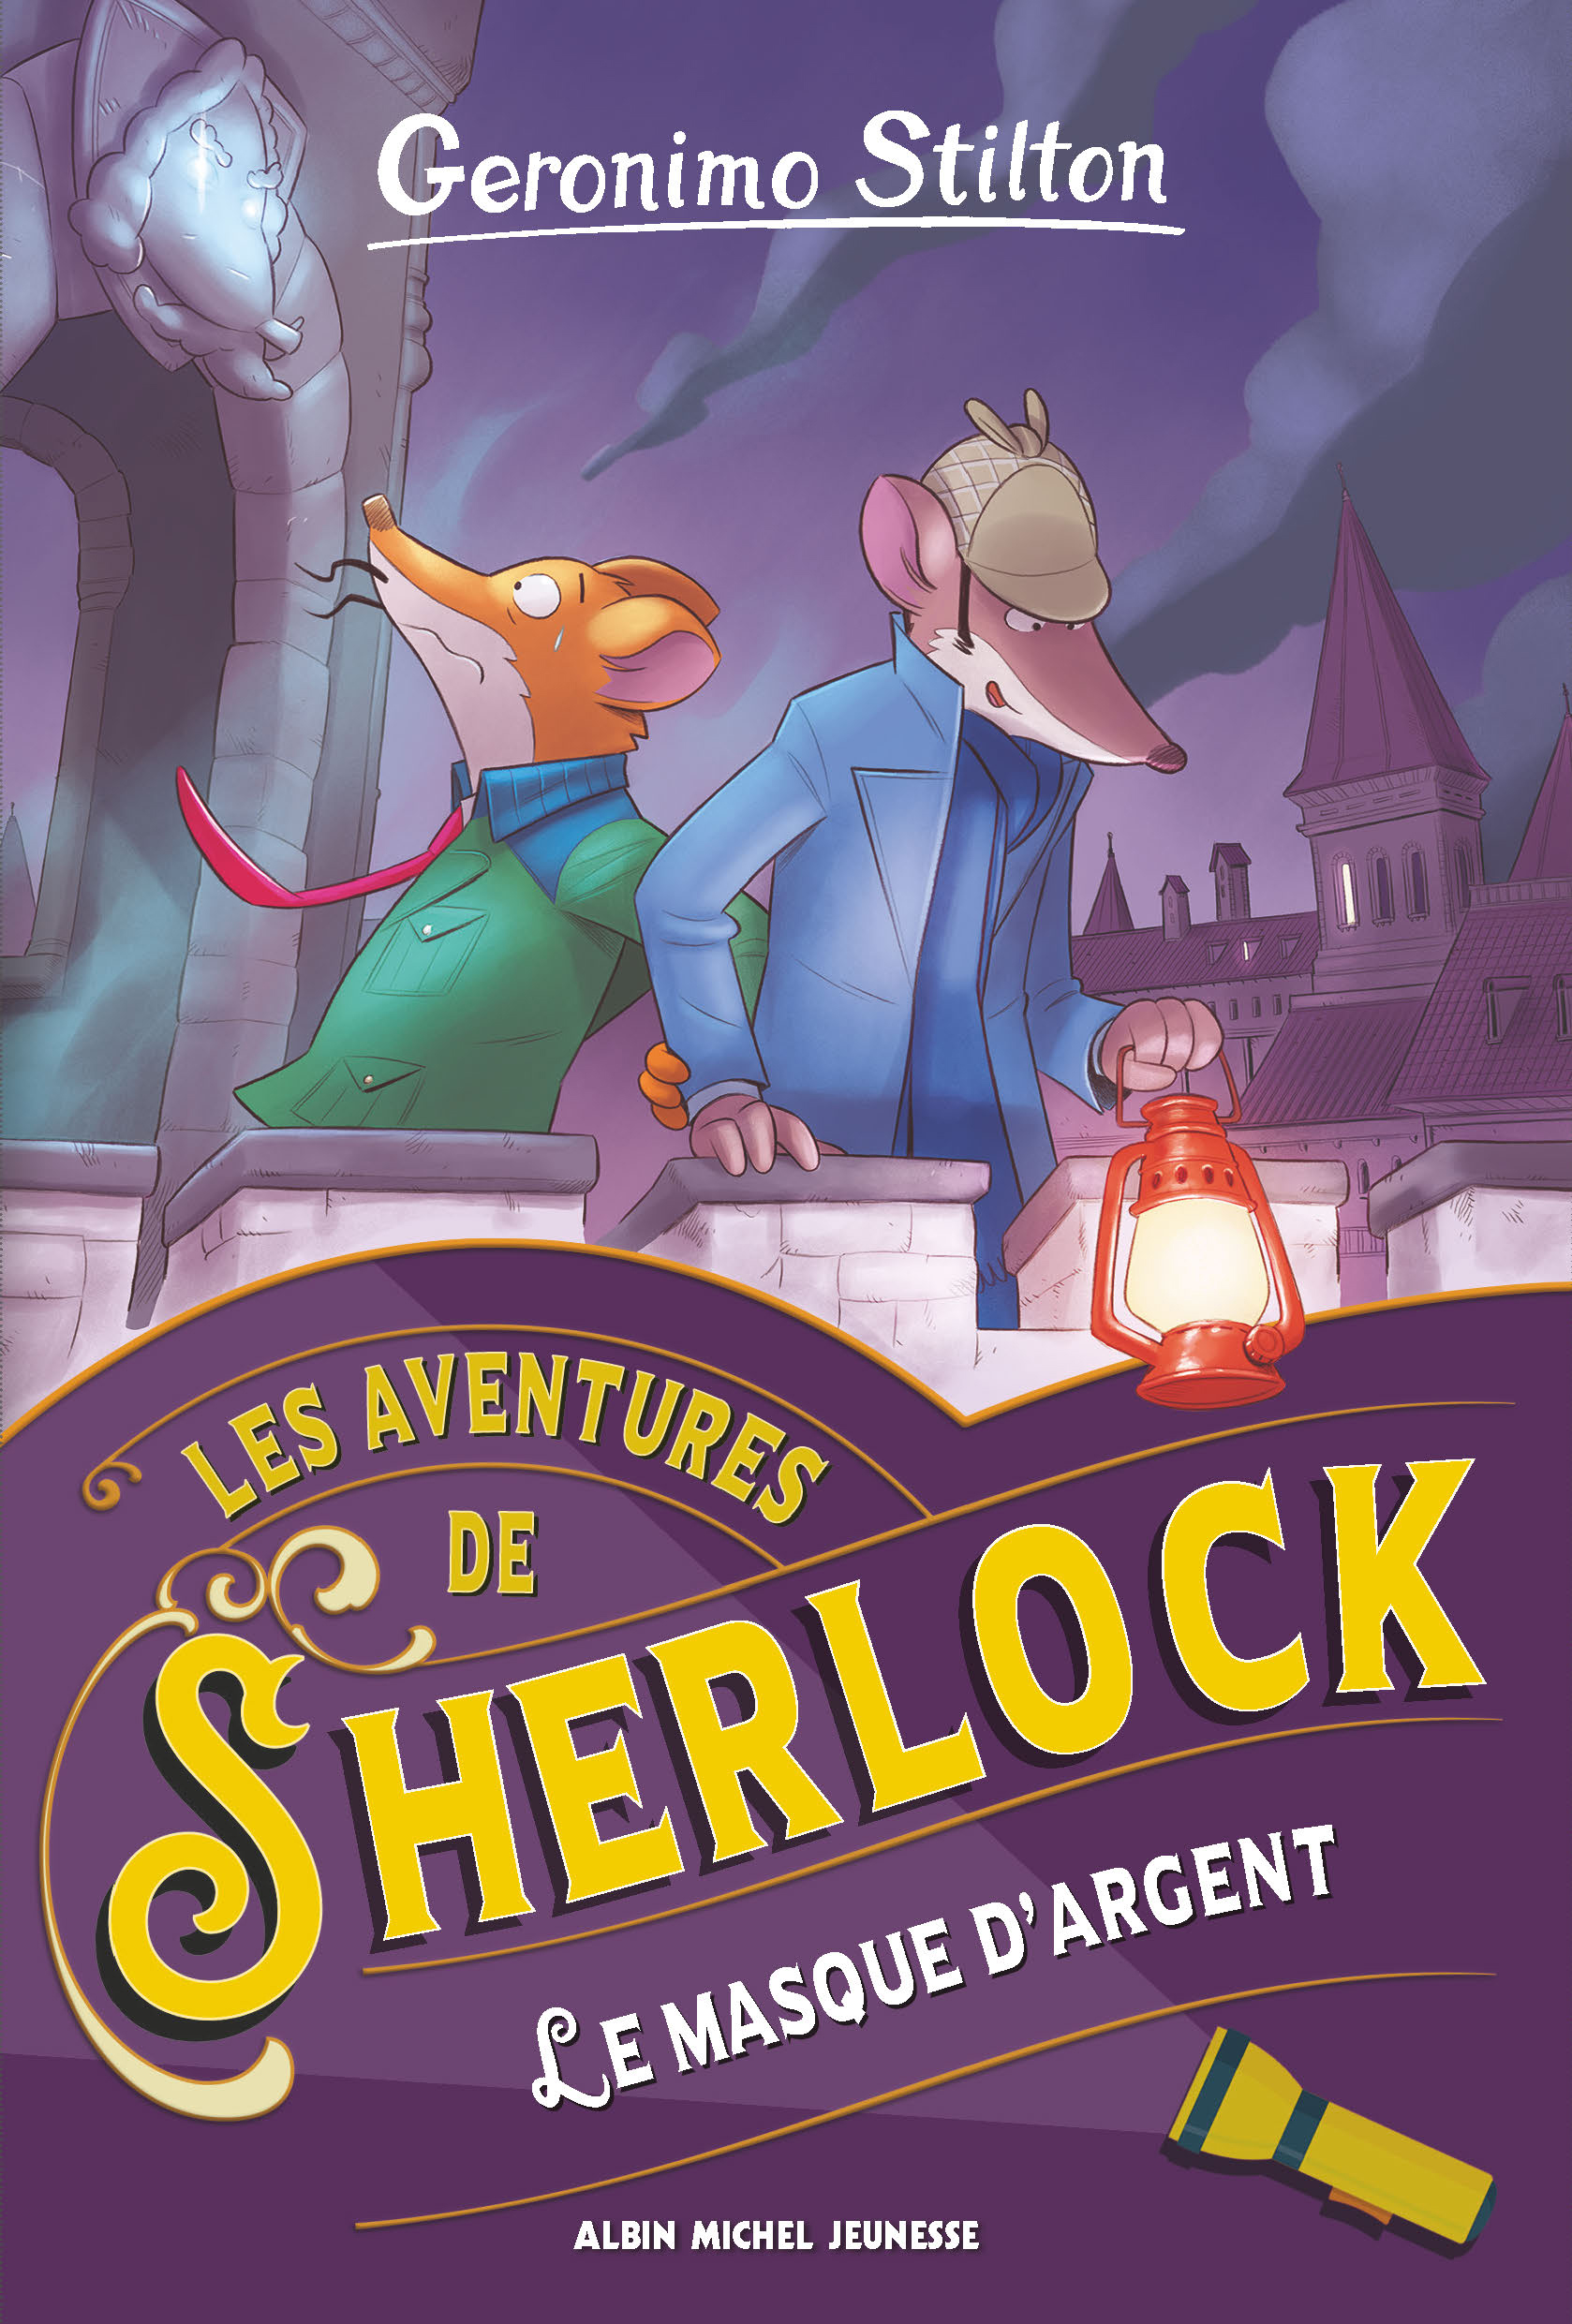 Couverture du livre Les Aventures de Sherlock - tome 3 - Le Masque d'argent